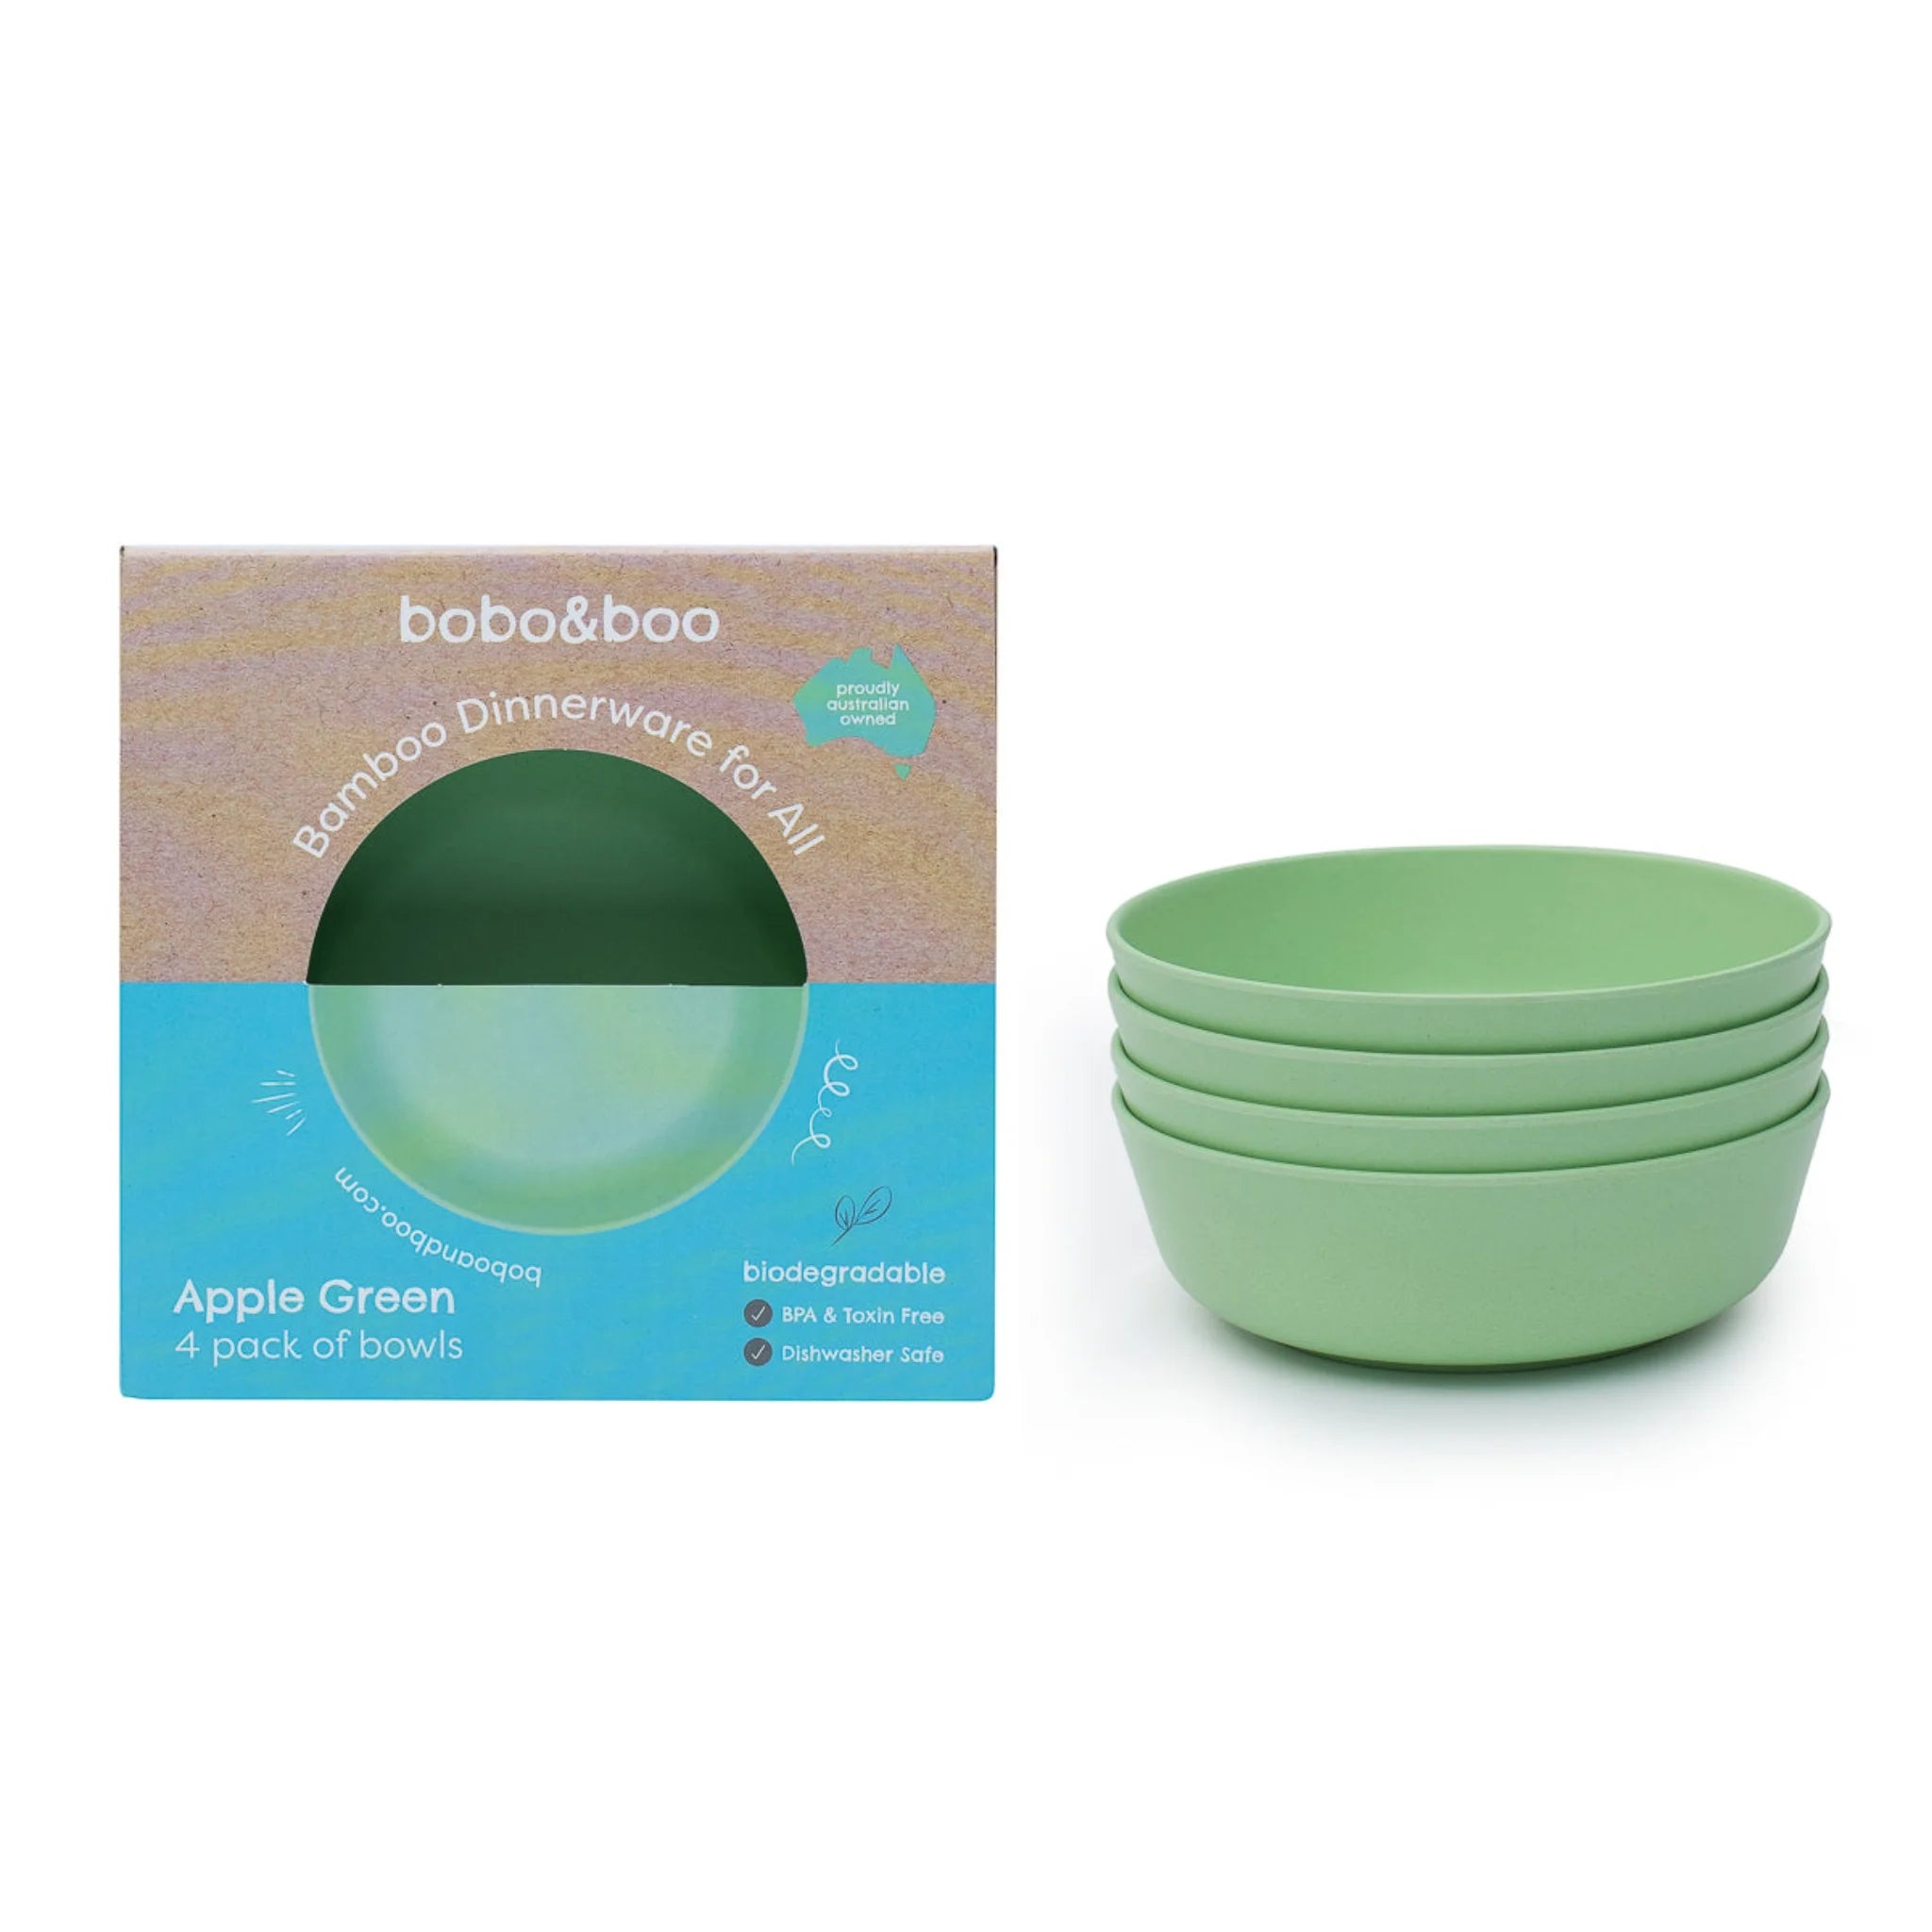 bobo&boo Bamboo Bowls - 4 Pack